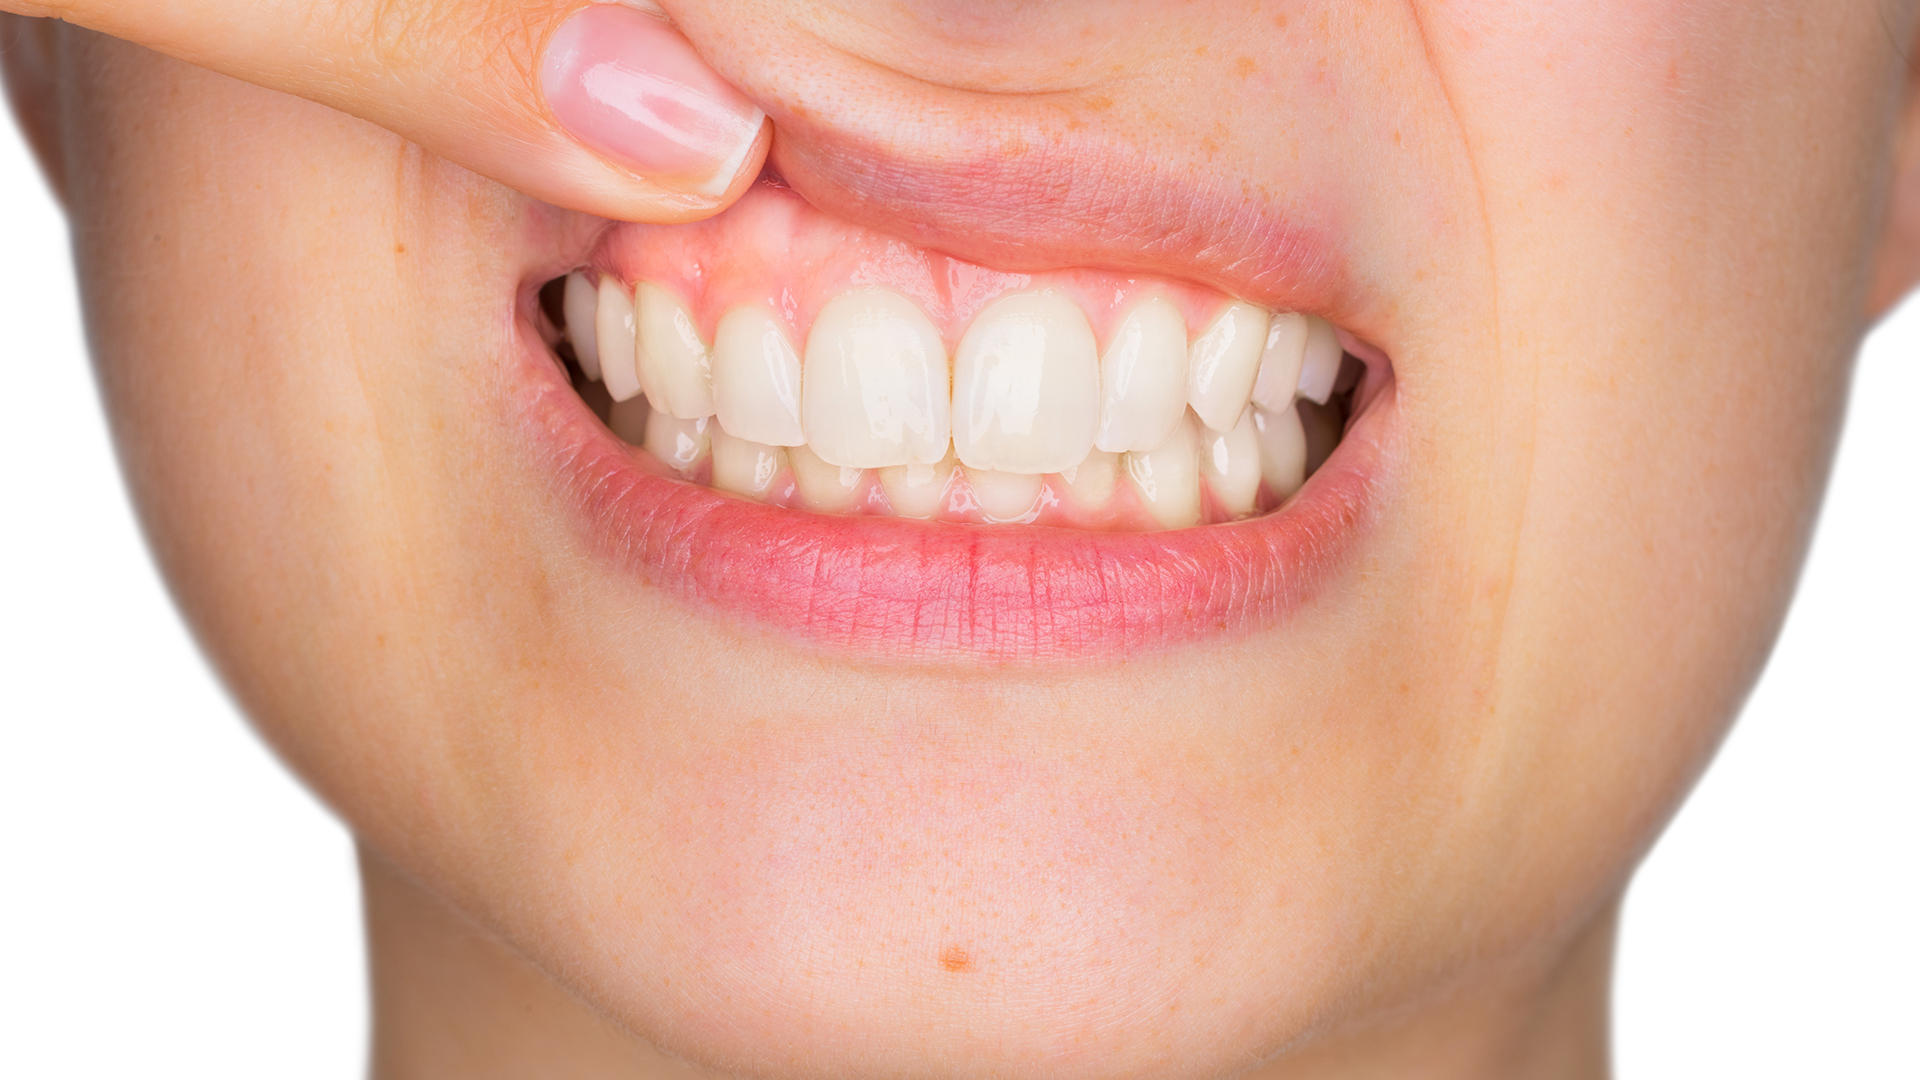 Si no se trata, la gingivitis puede convertirse en periodontitis, un tipo más grave de la enfermedad en el que las encías se retraen, pierdes hueso y los dientes pueden aflojarse o incluso caerse. (Shutterstock) 